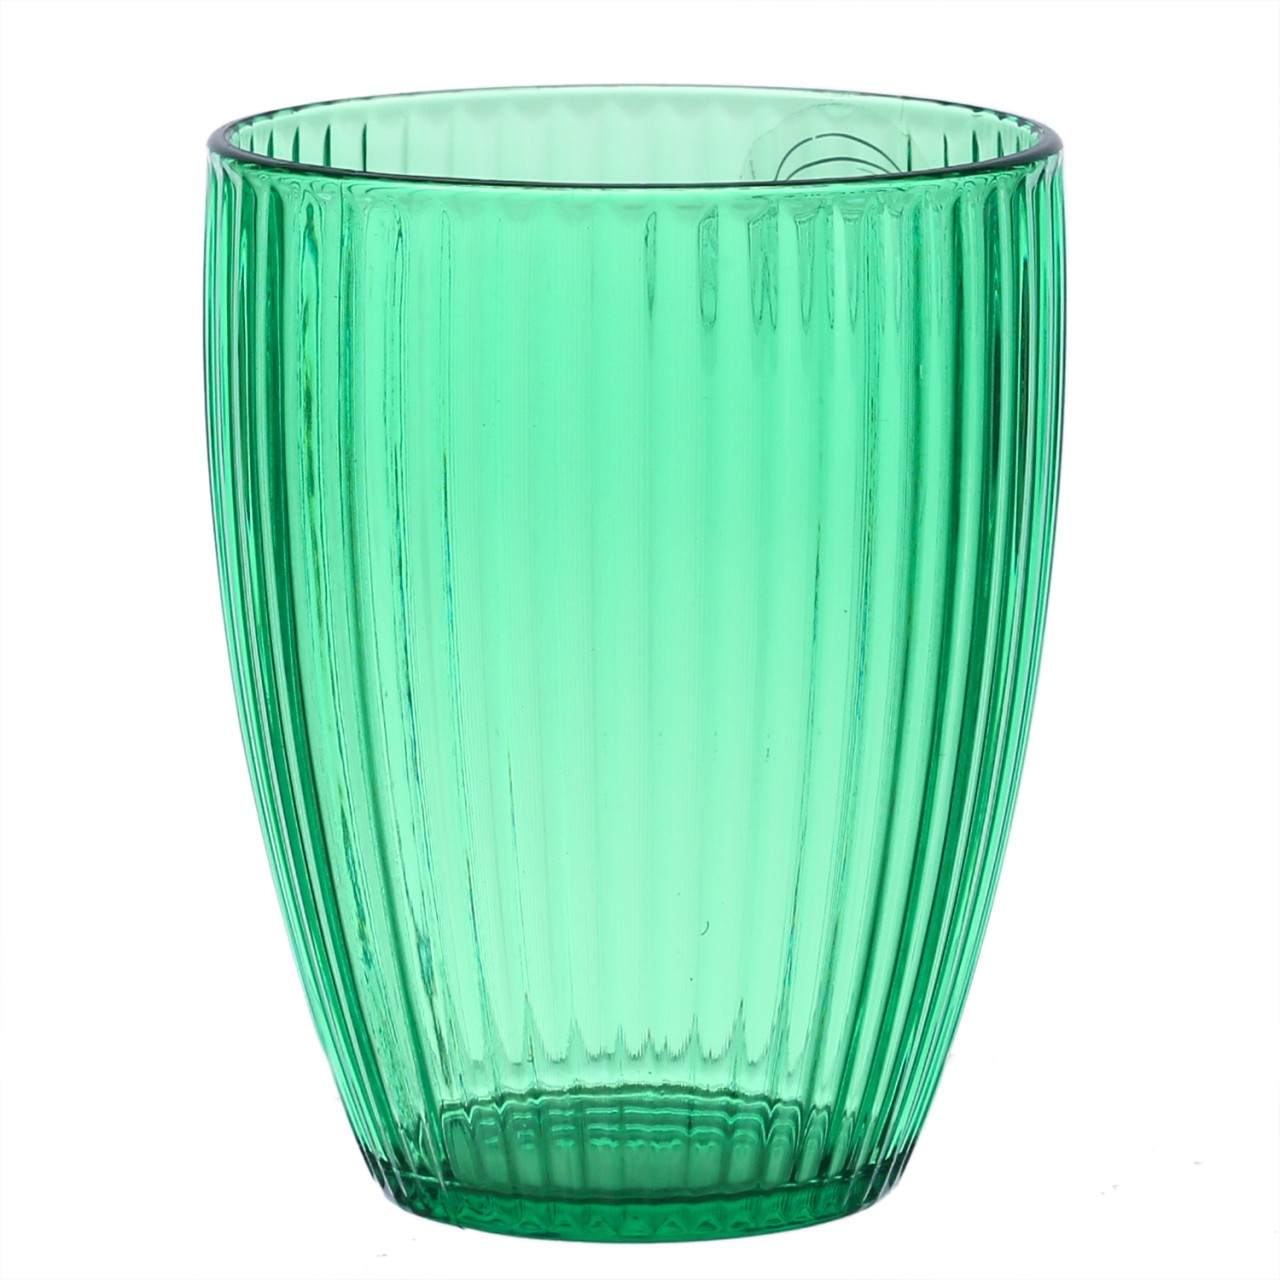 Trinkglas – Becher – Kunststoff – 430ml – mit Rillen – grün